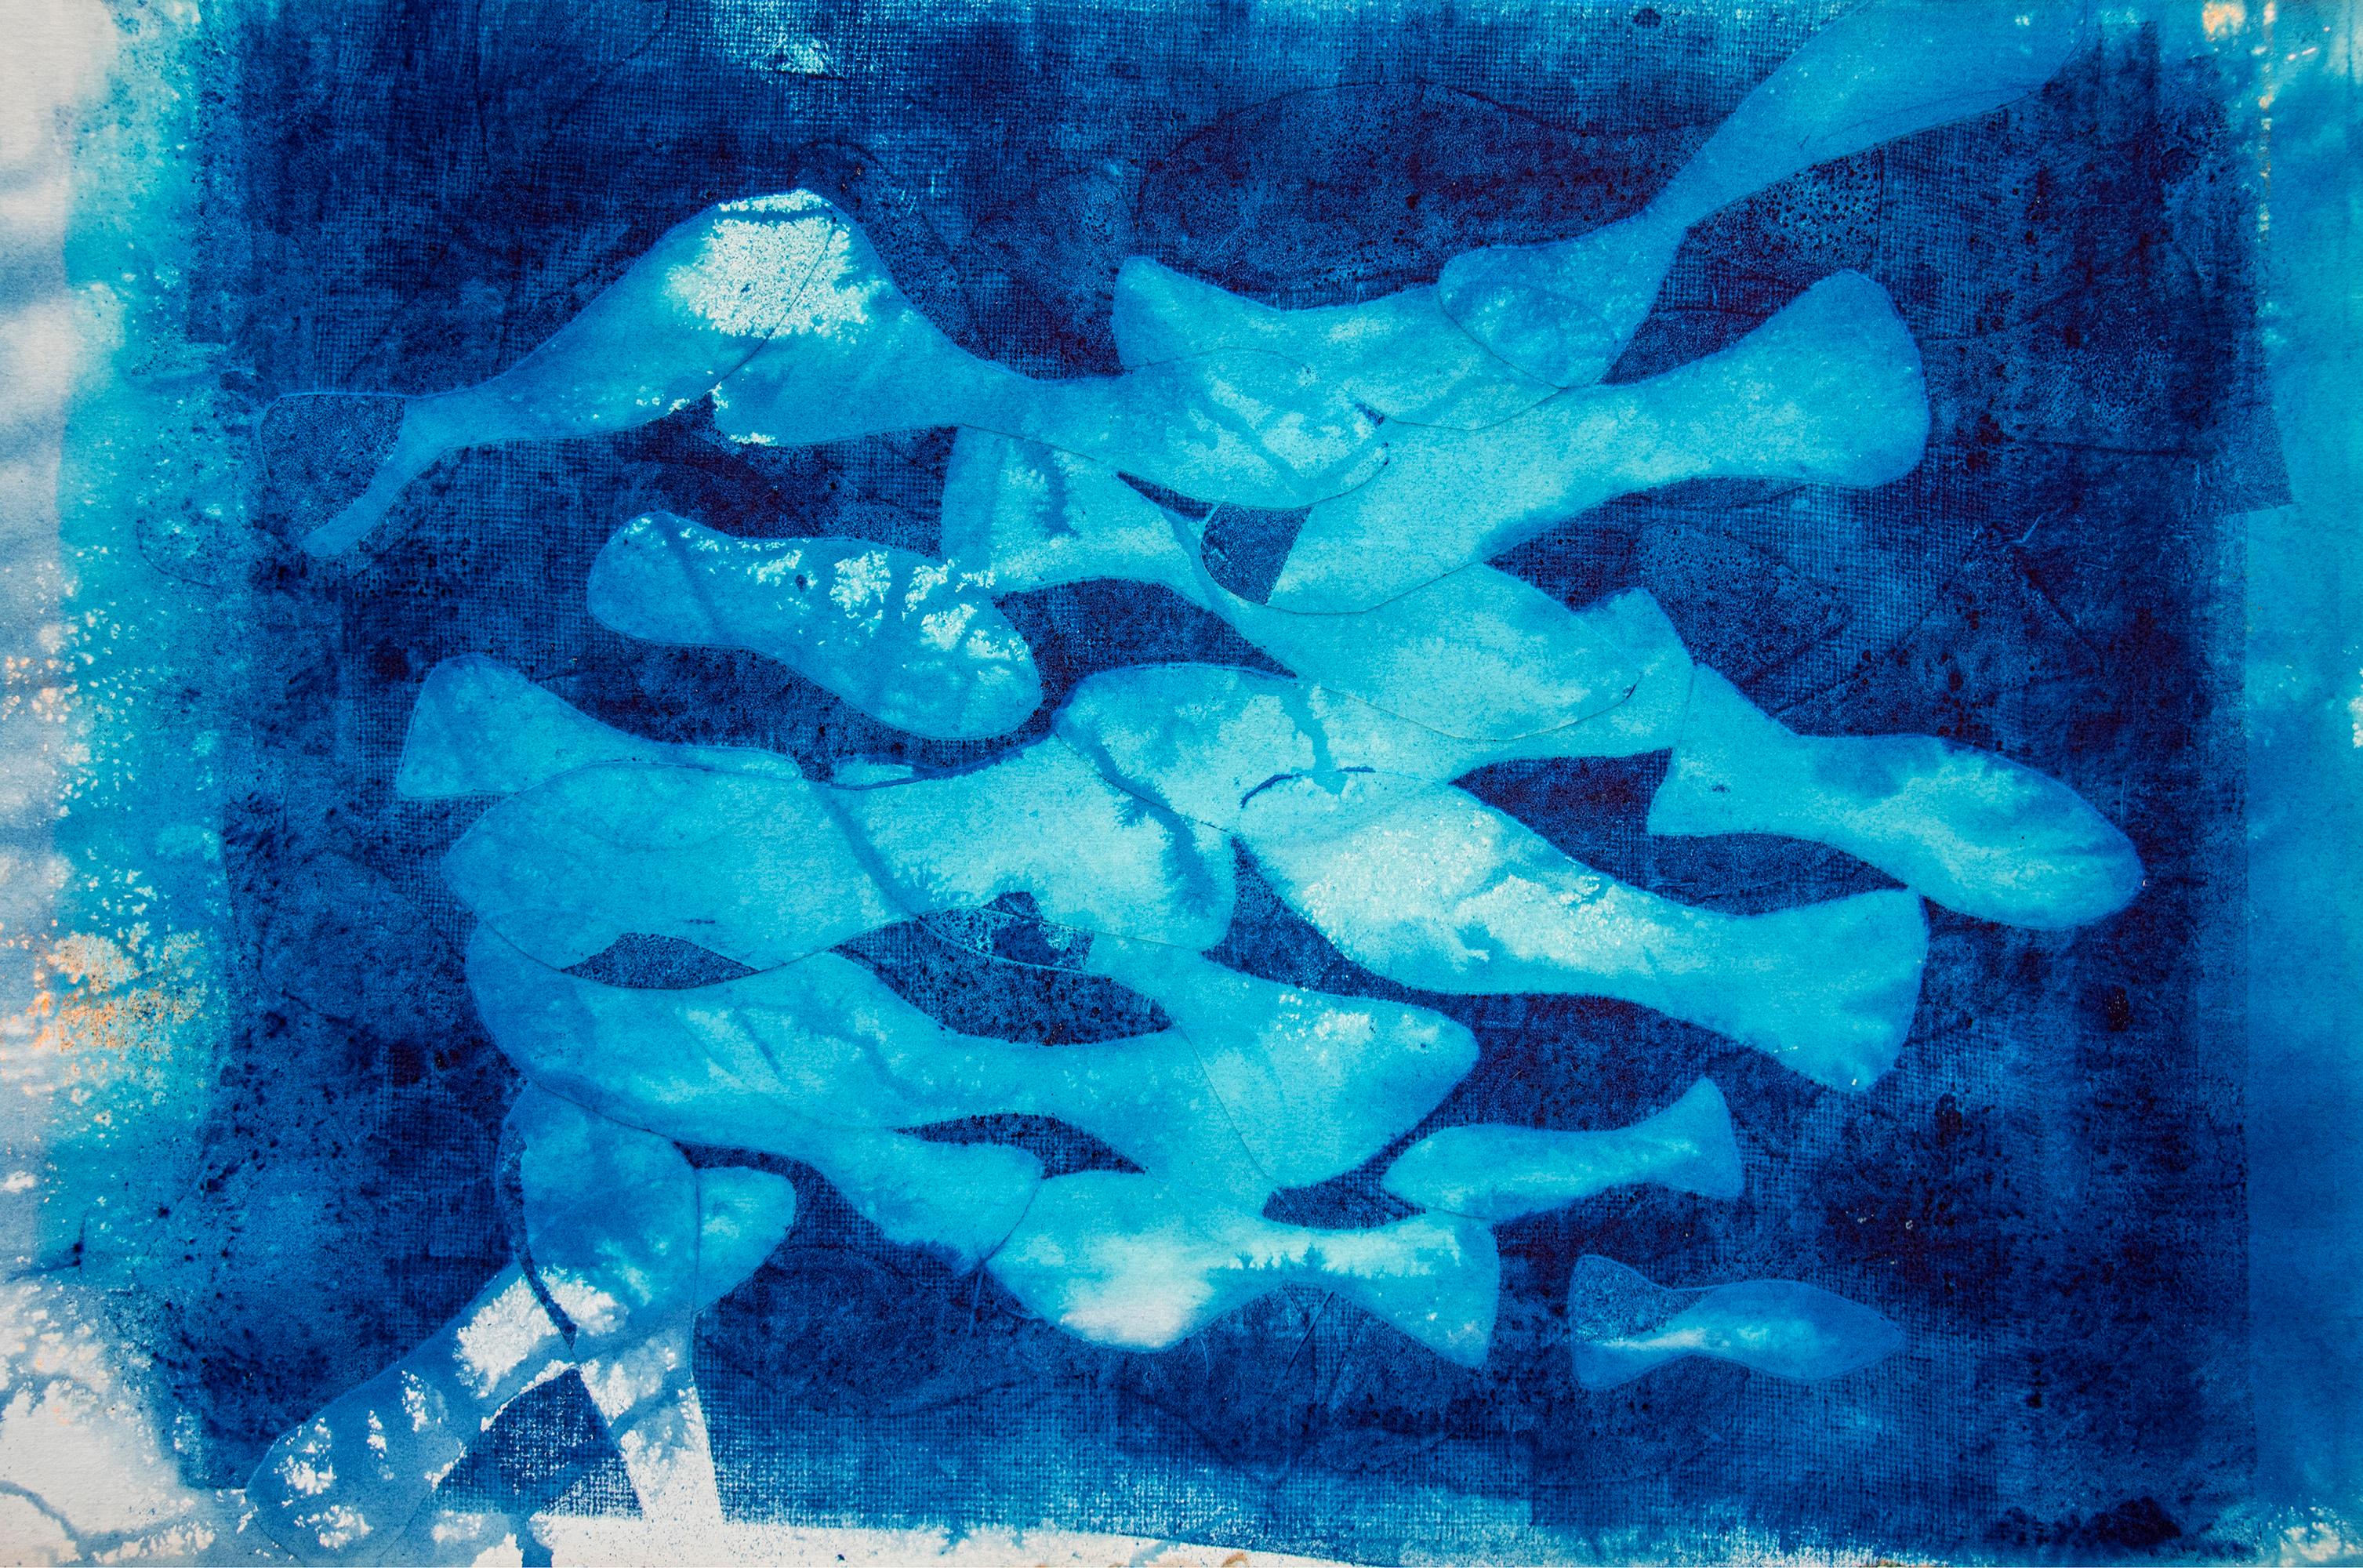 Marina Abismal, Gemälde in Mischtechnik, Blautöne, mediterrane Fischmuster